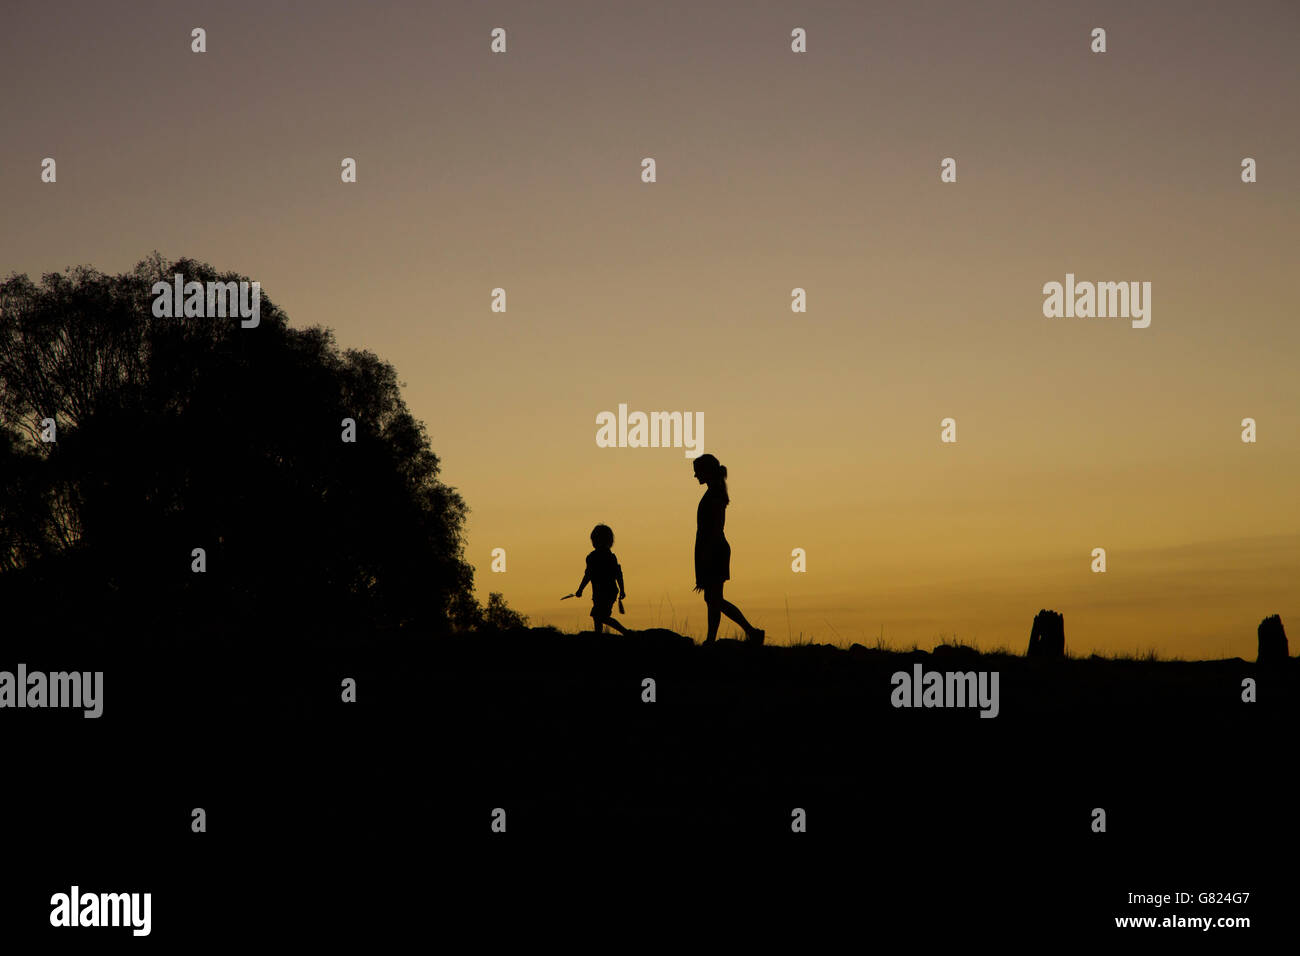 Silhouette ragazzo e ragazza camminare sul campo contro il cielo chiaro durante il tramonto Foto Stock